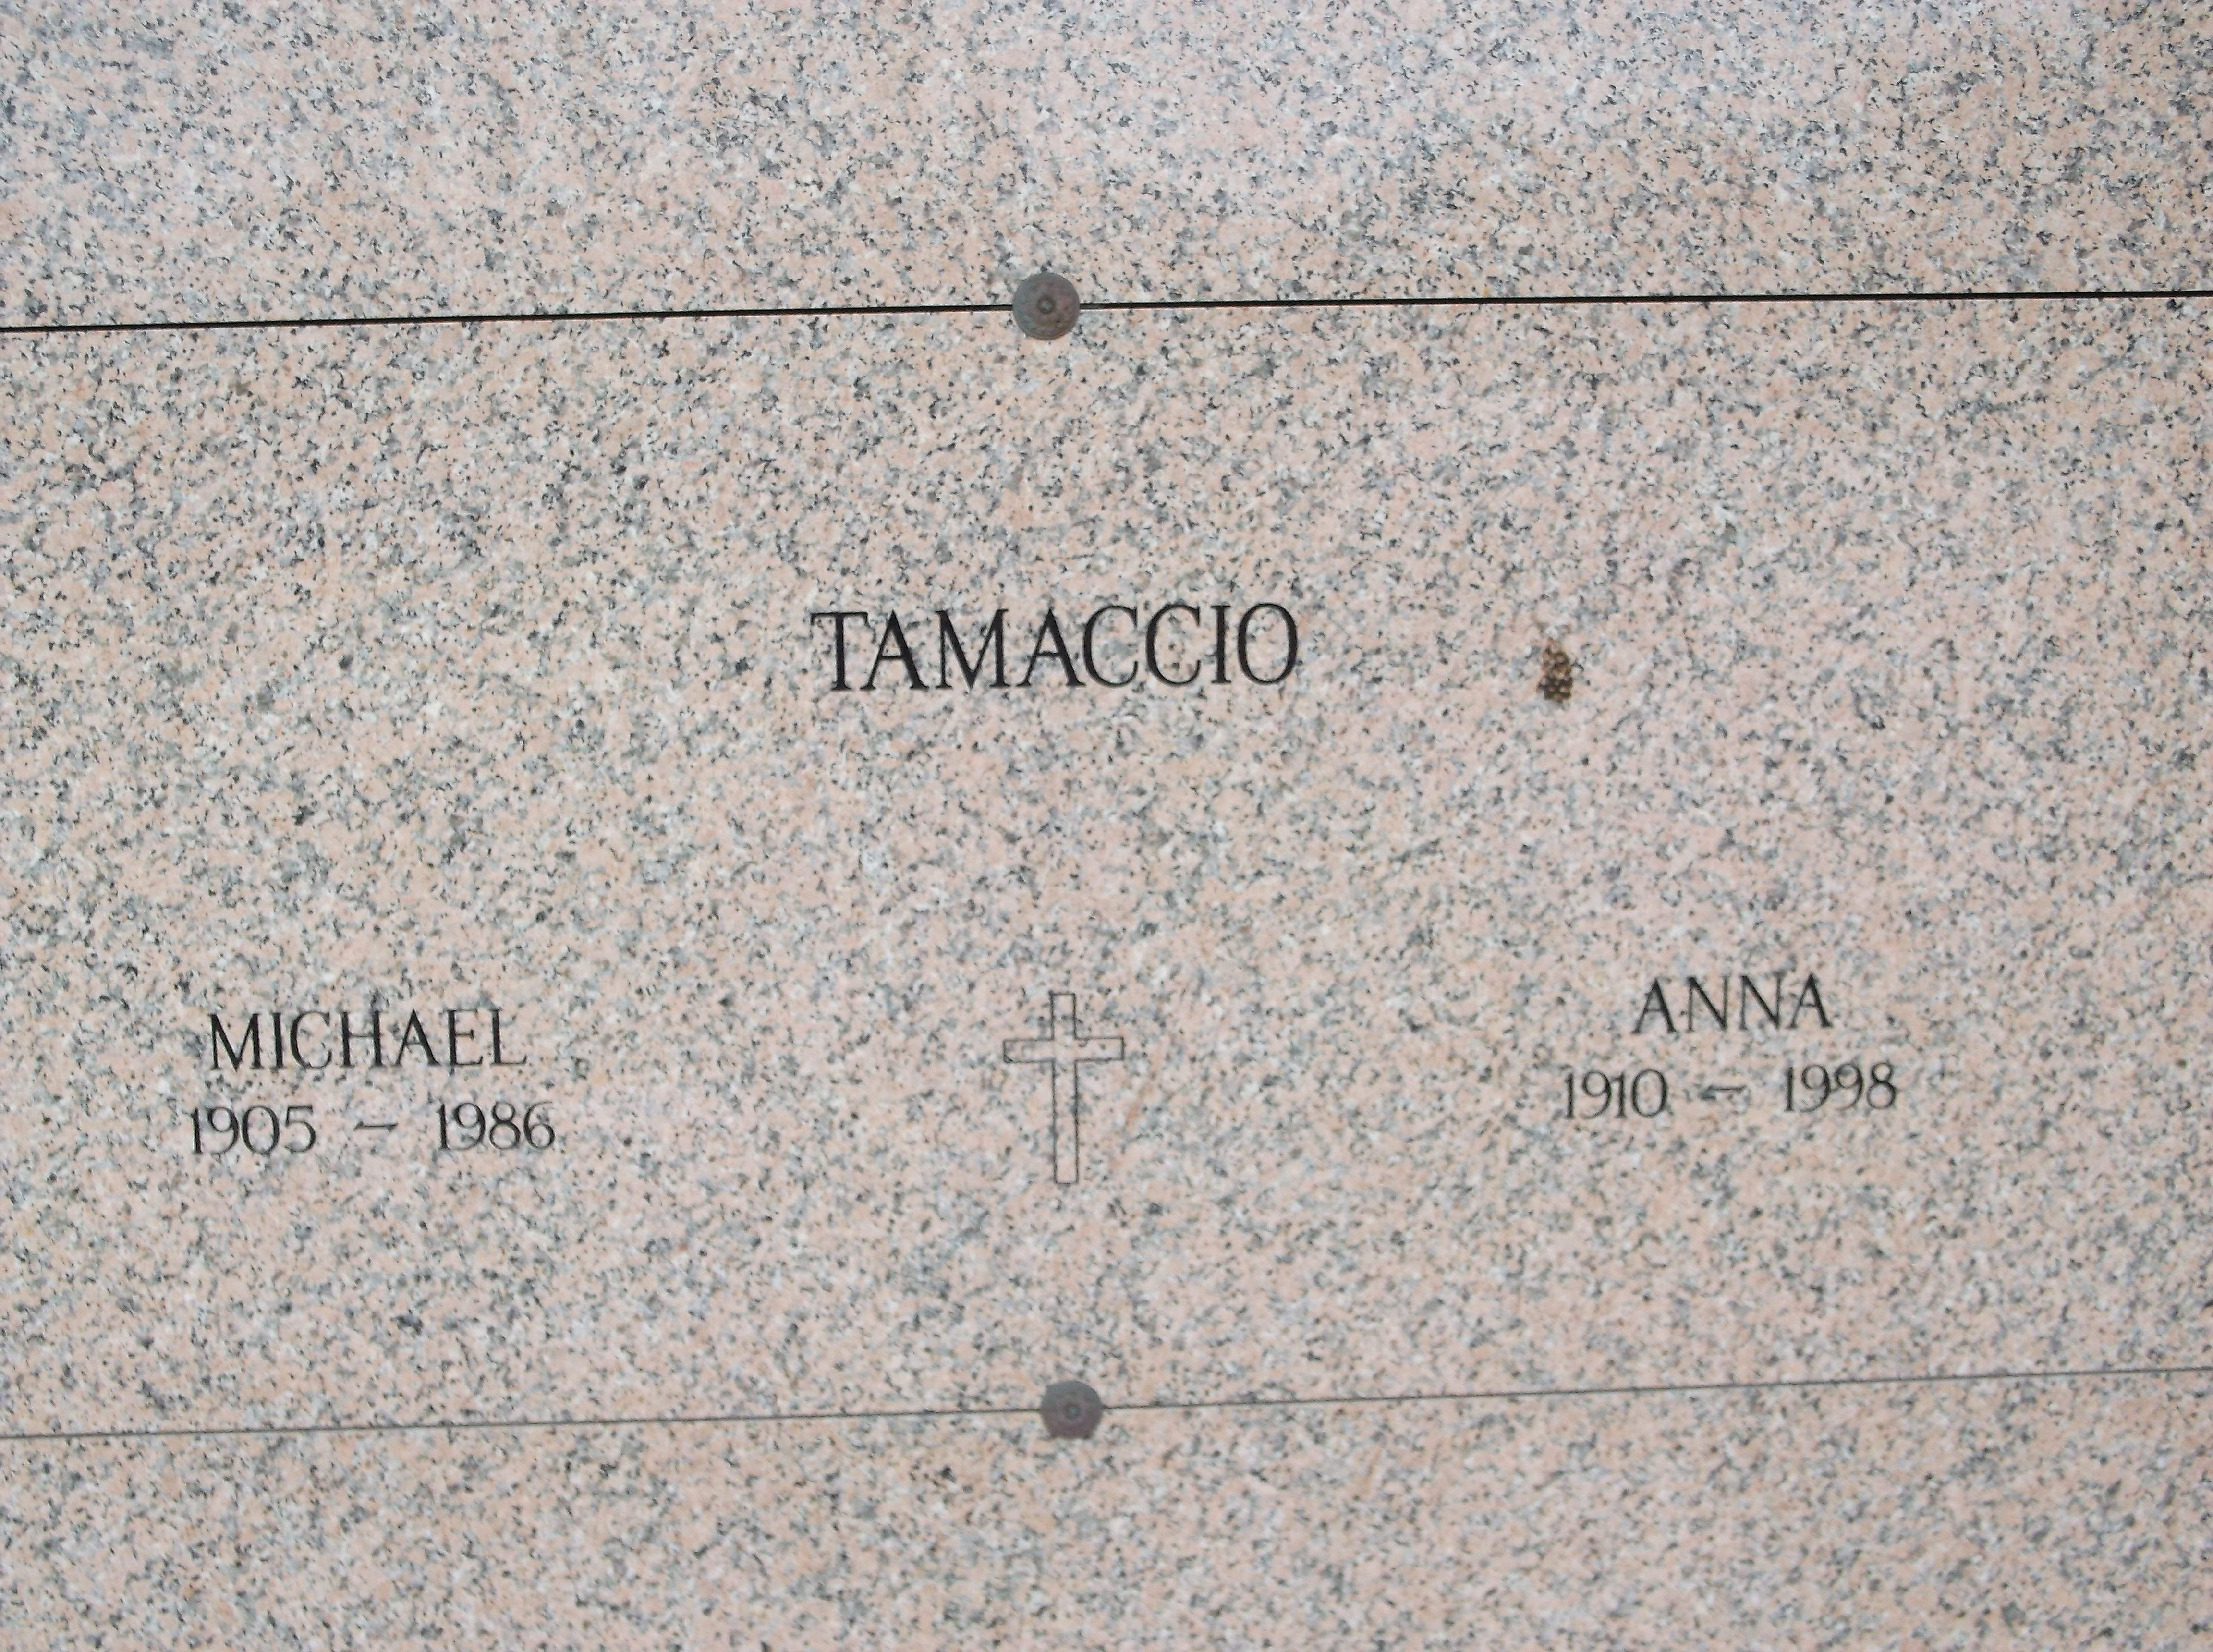 Anna Tamaccio